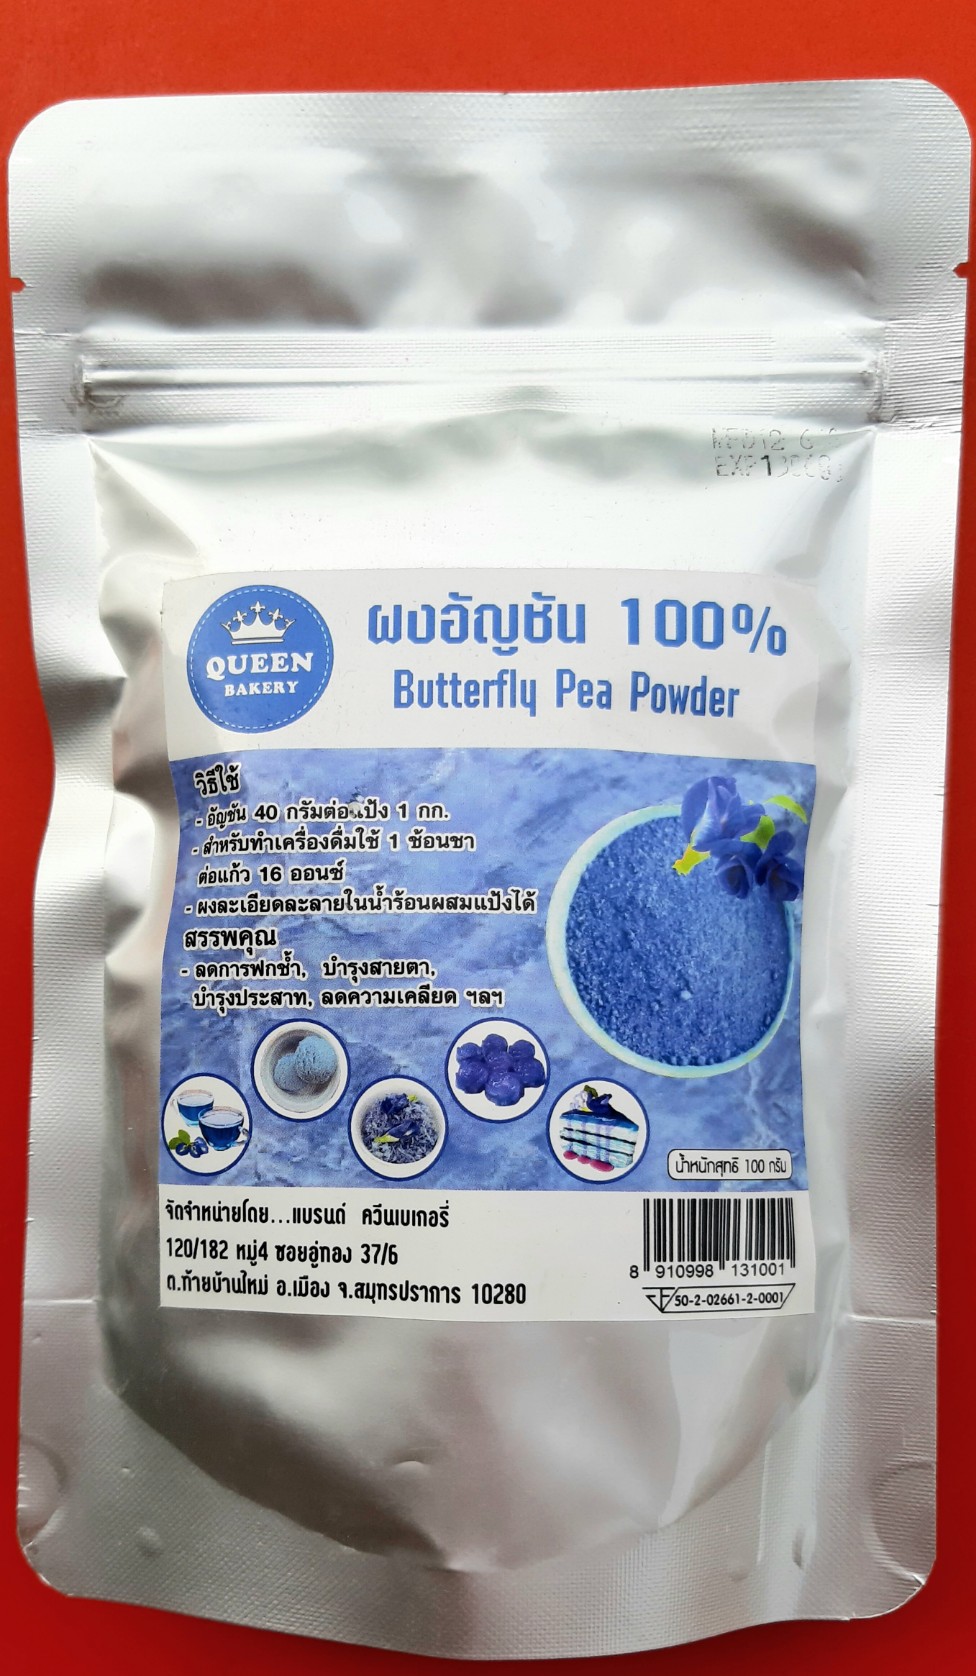 ผงอัญชัน 100% Butterfly Pea Powder ทำจากดอกอัญชันธรรมชาติ น้ำหนัก 100 กรัม ใช้ผสมอาหารและเครื่องดื่มแทนน้ำตาล ดื่มได้อย่างปลอดภัย